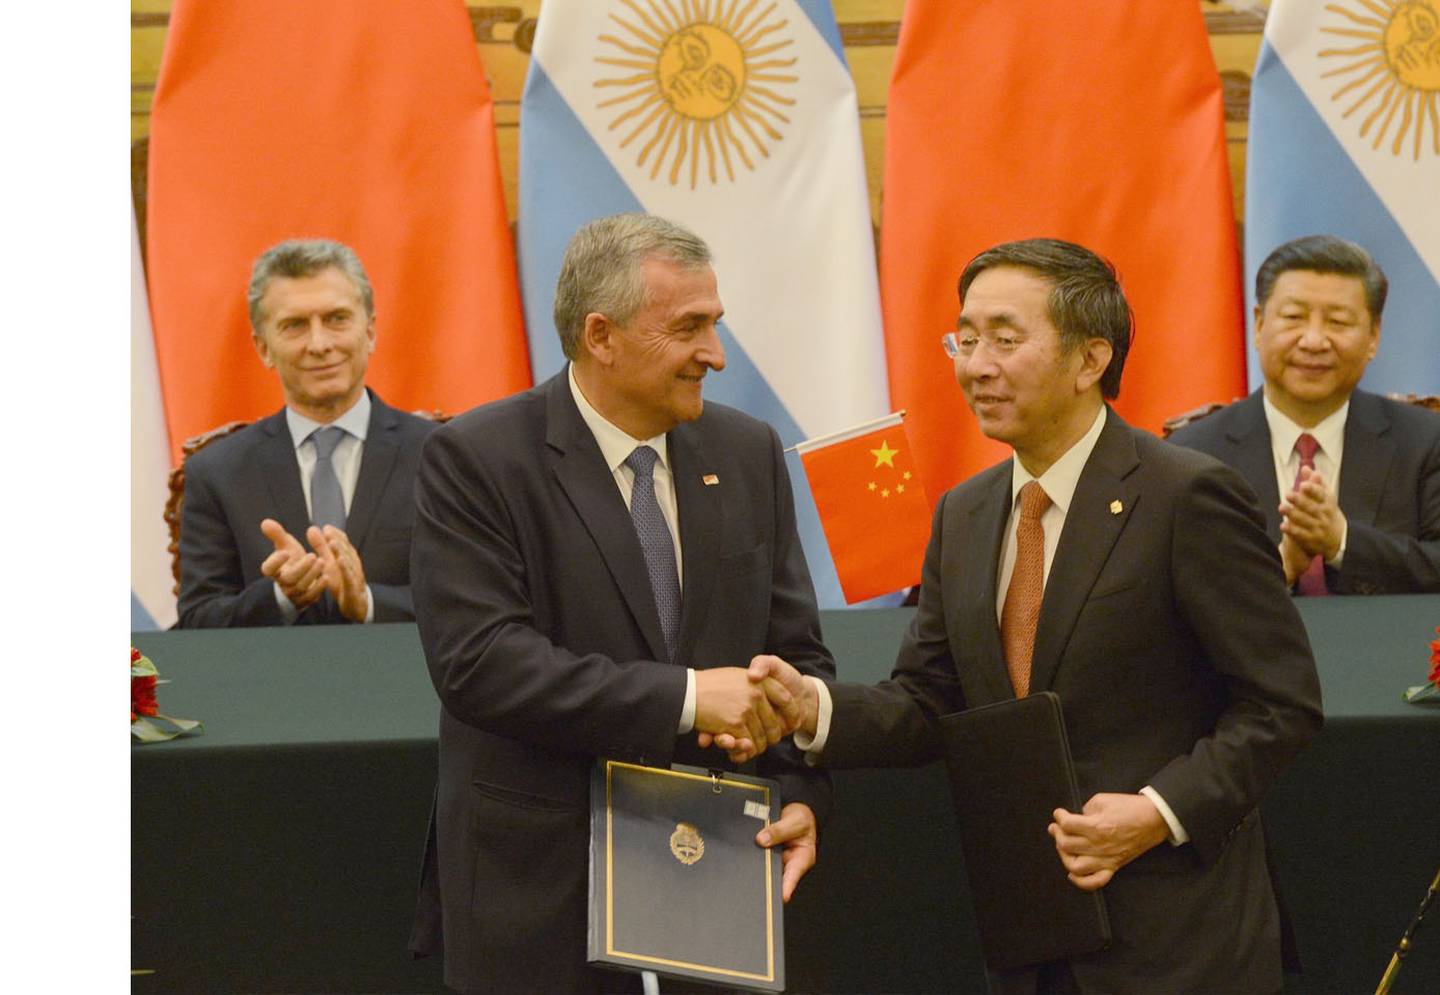 El gobernador Gerardo Morales junto al presidente de POWERCHINA Ltd. Yan Zhiyong. Detrás, el expresidente argentino, Mauricio Macri y el presidente de la República Popular China, Xi Jinping.dfd